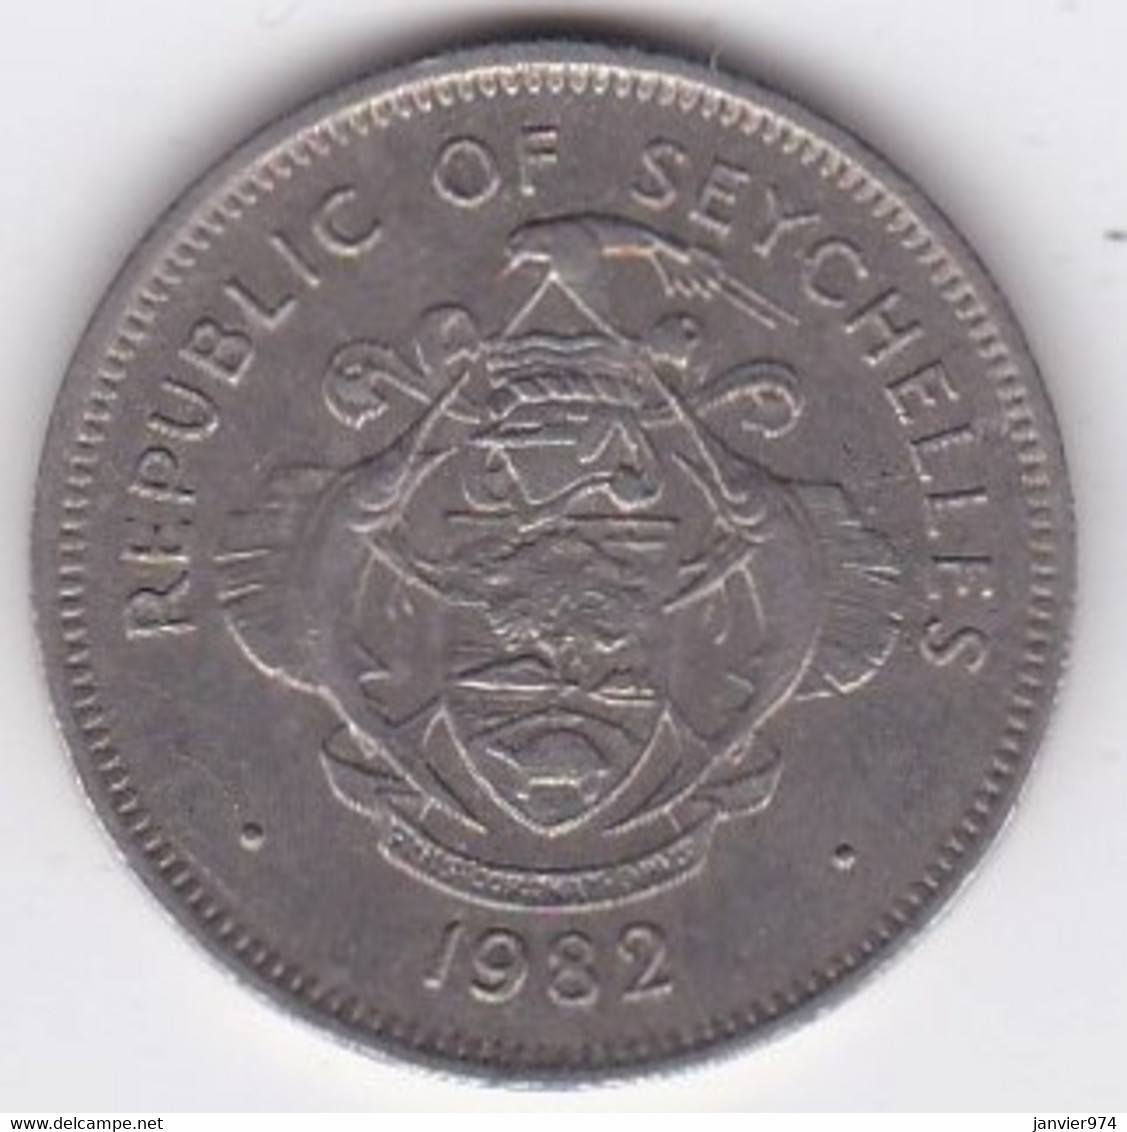 Seychelles 1 Rupee 1982, En Cupro Nickel, KM# 50 - Seychelles